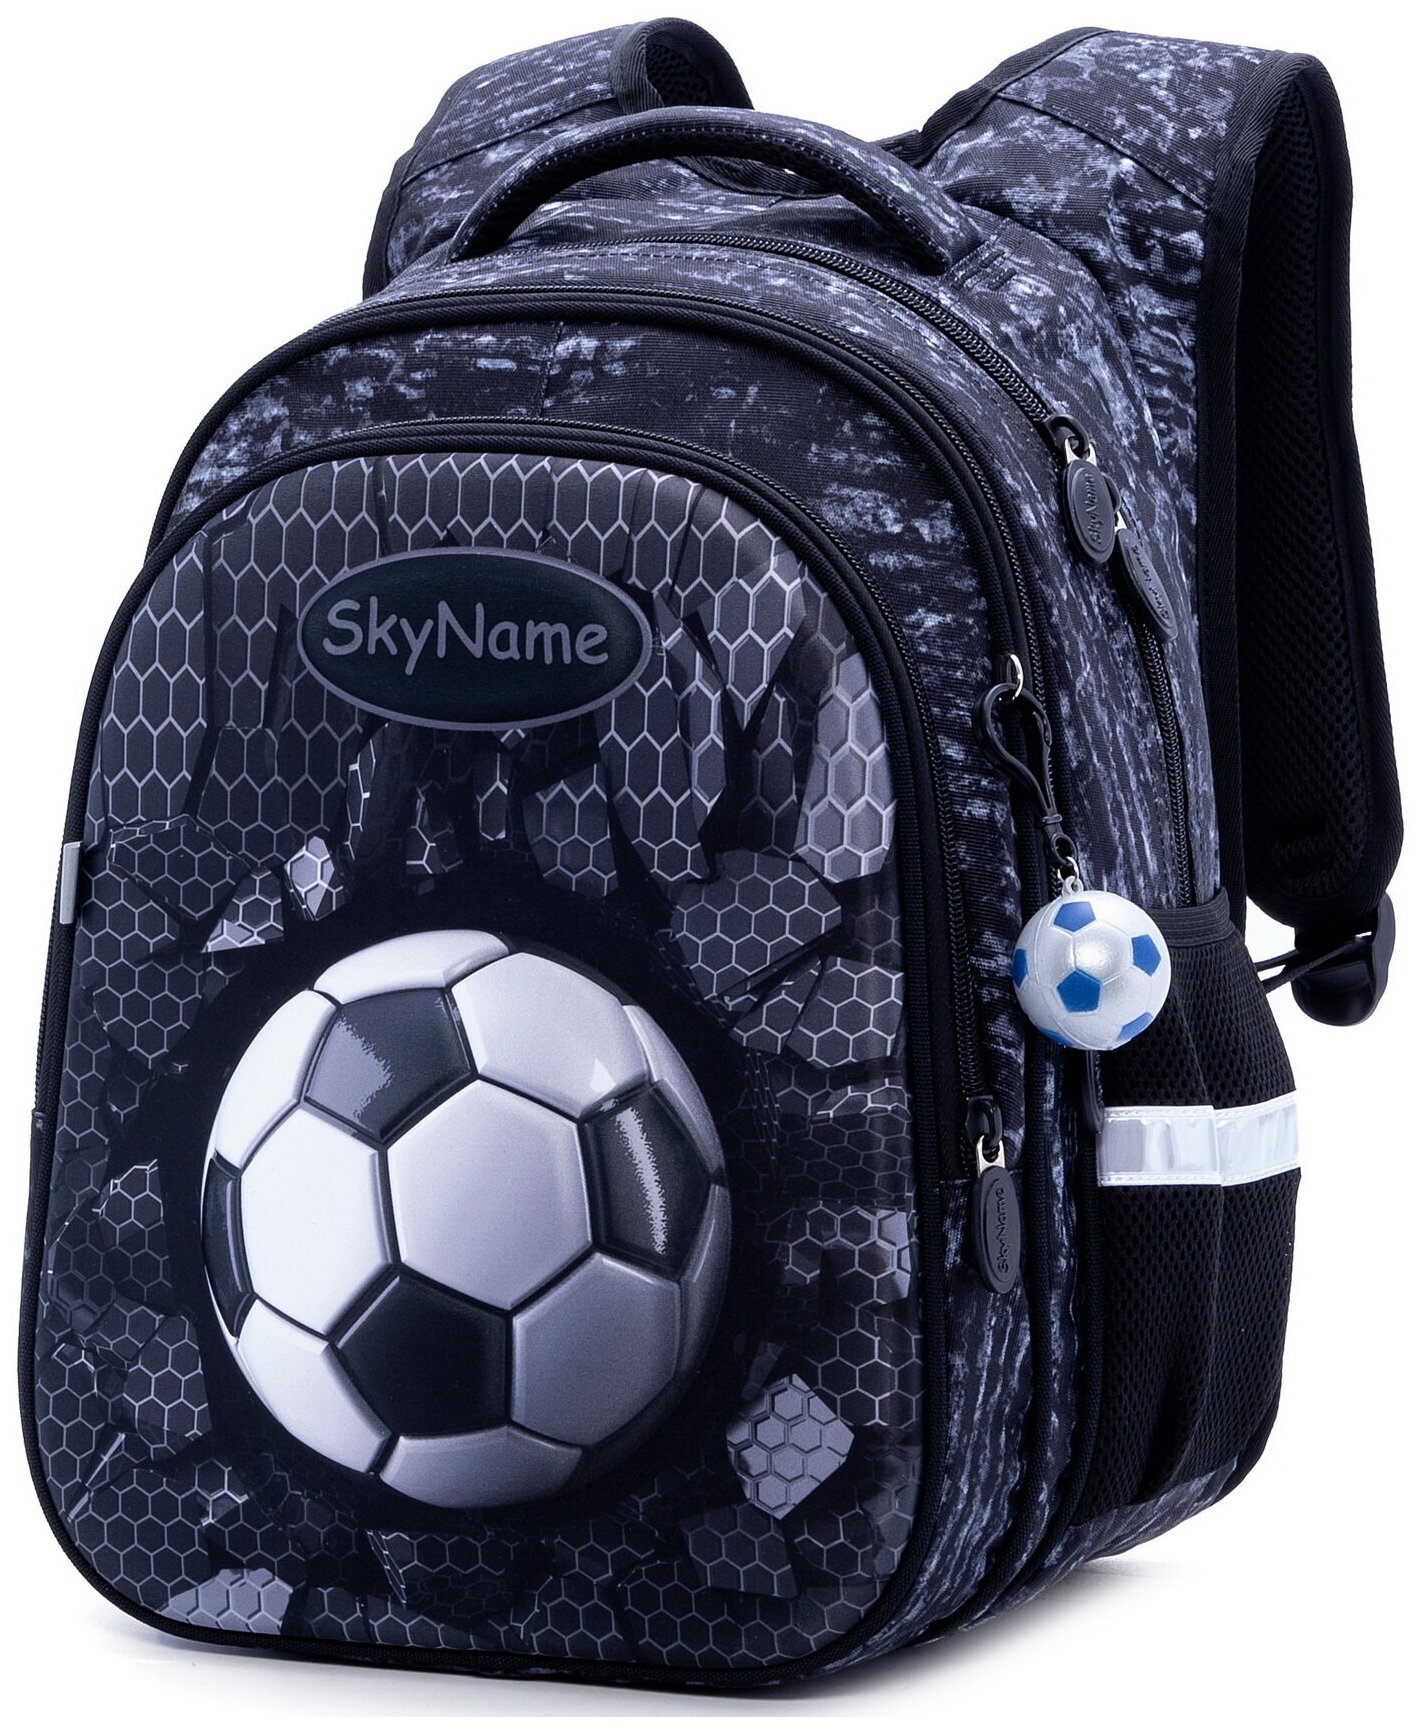 Школьный рюкзак SkyName R1-017 + мяч в подарок, для мальчика, детский с 3D рисунком